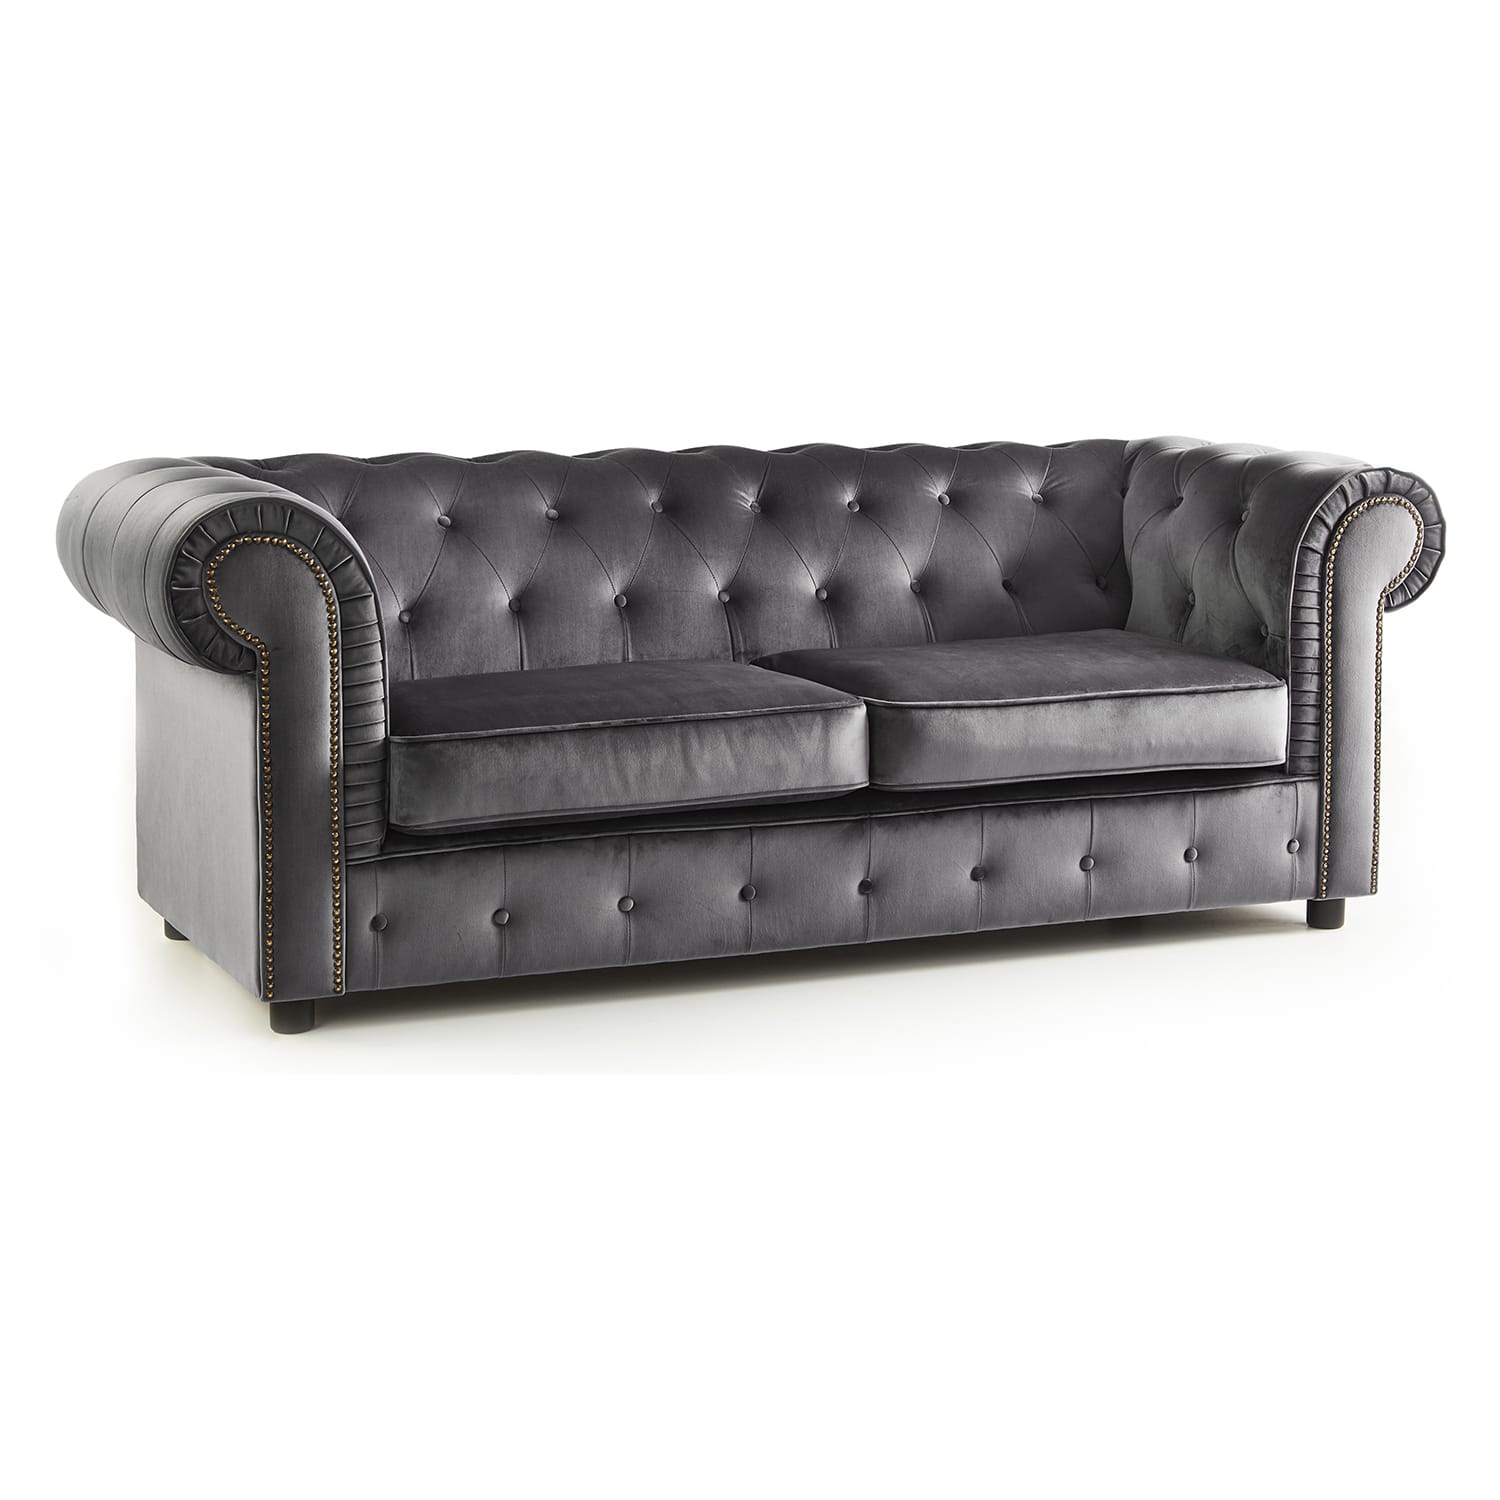 The Ashcroft Soft Velvet Chesterfield 3 Seater Sofa - Grey